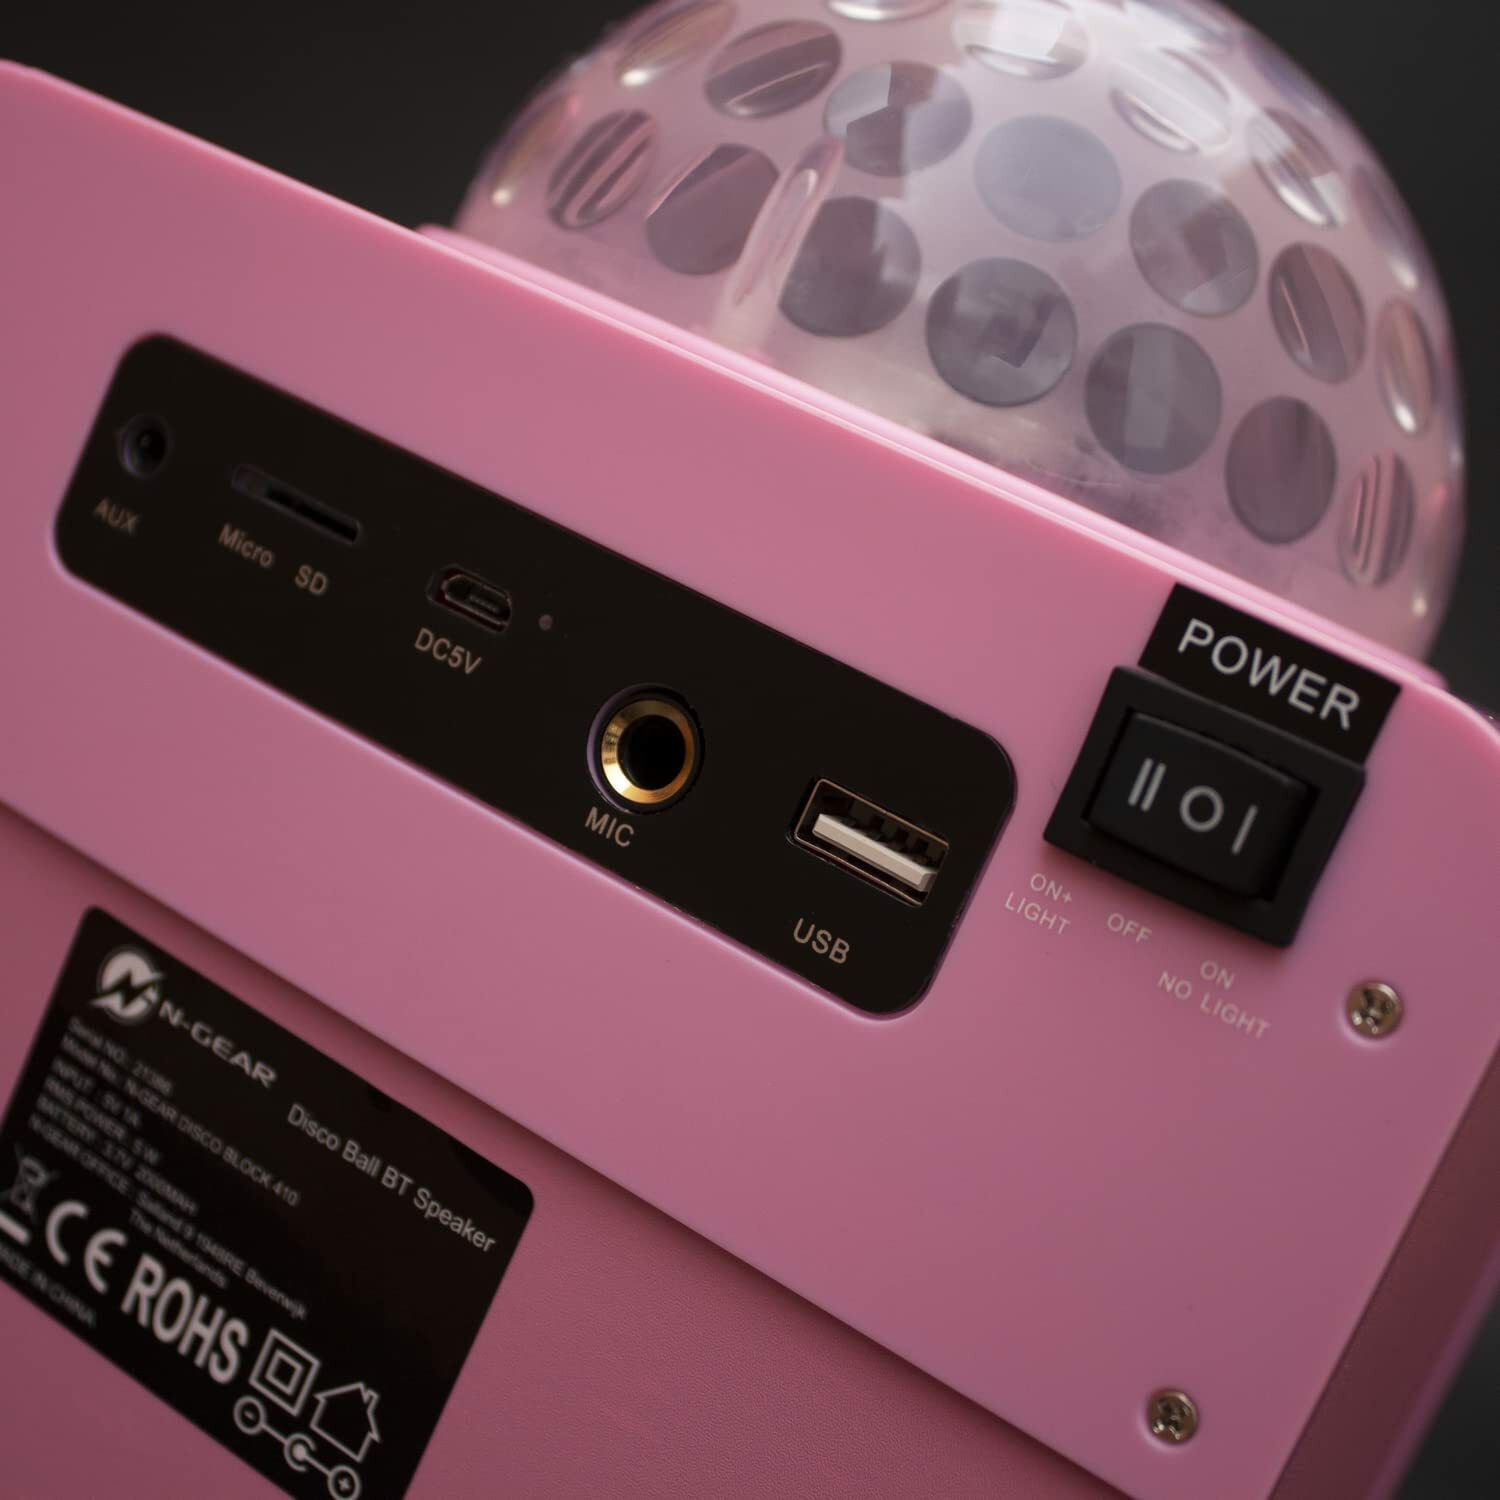 N-GEAR DISCO410-PK Karaoke-Lautsprecher, pink